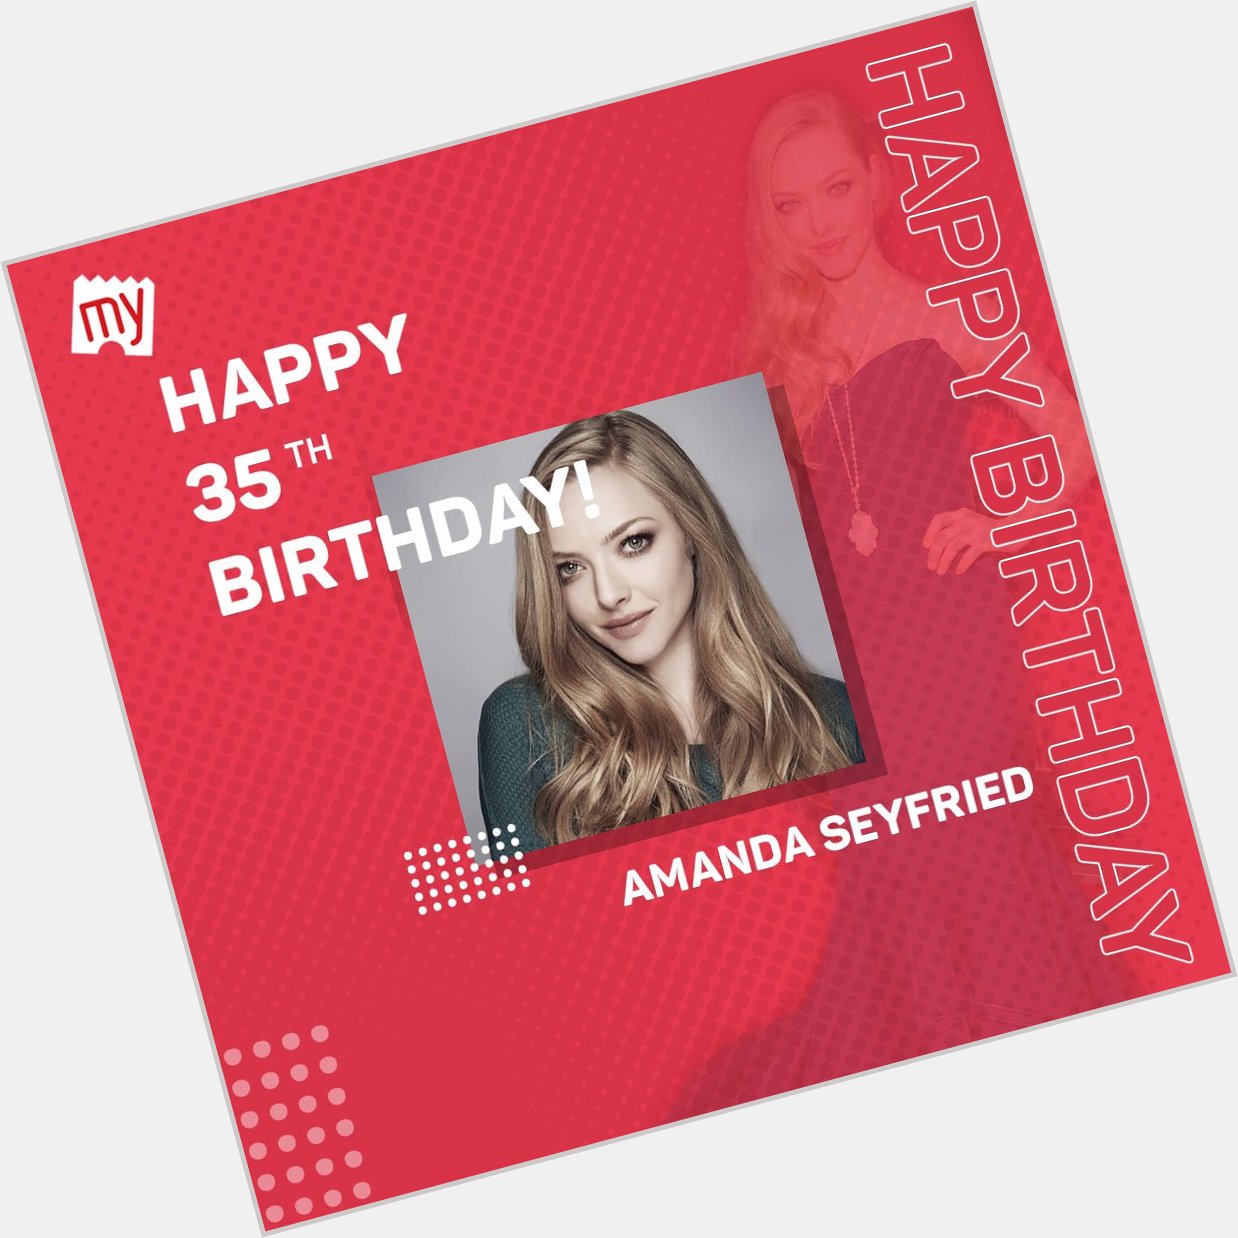 Happy birthday Amanda Seyfried, coba sebutin film favorit kamu dari dia?   